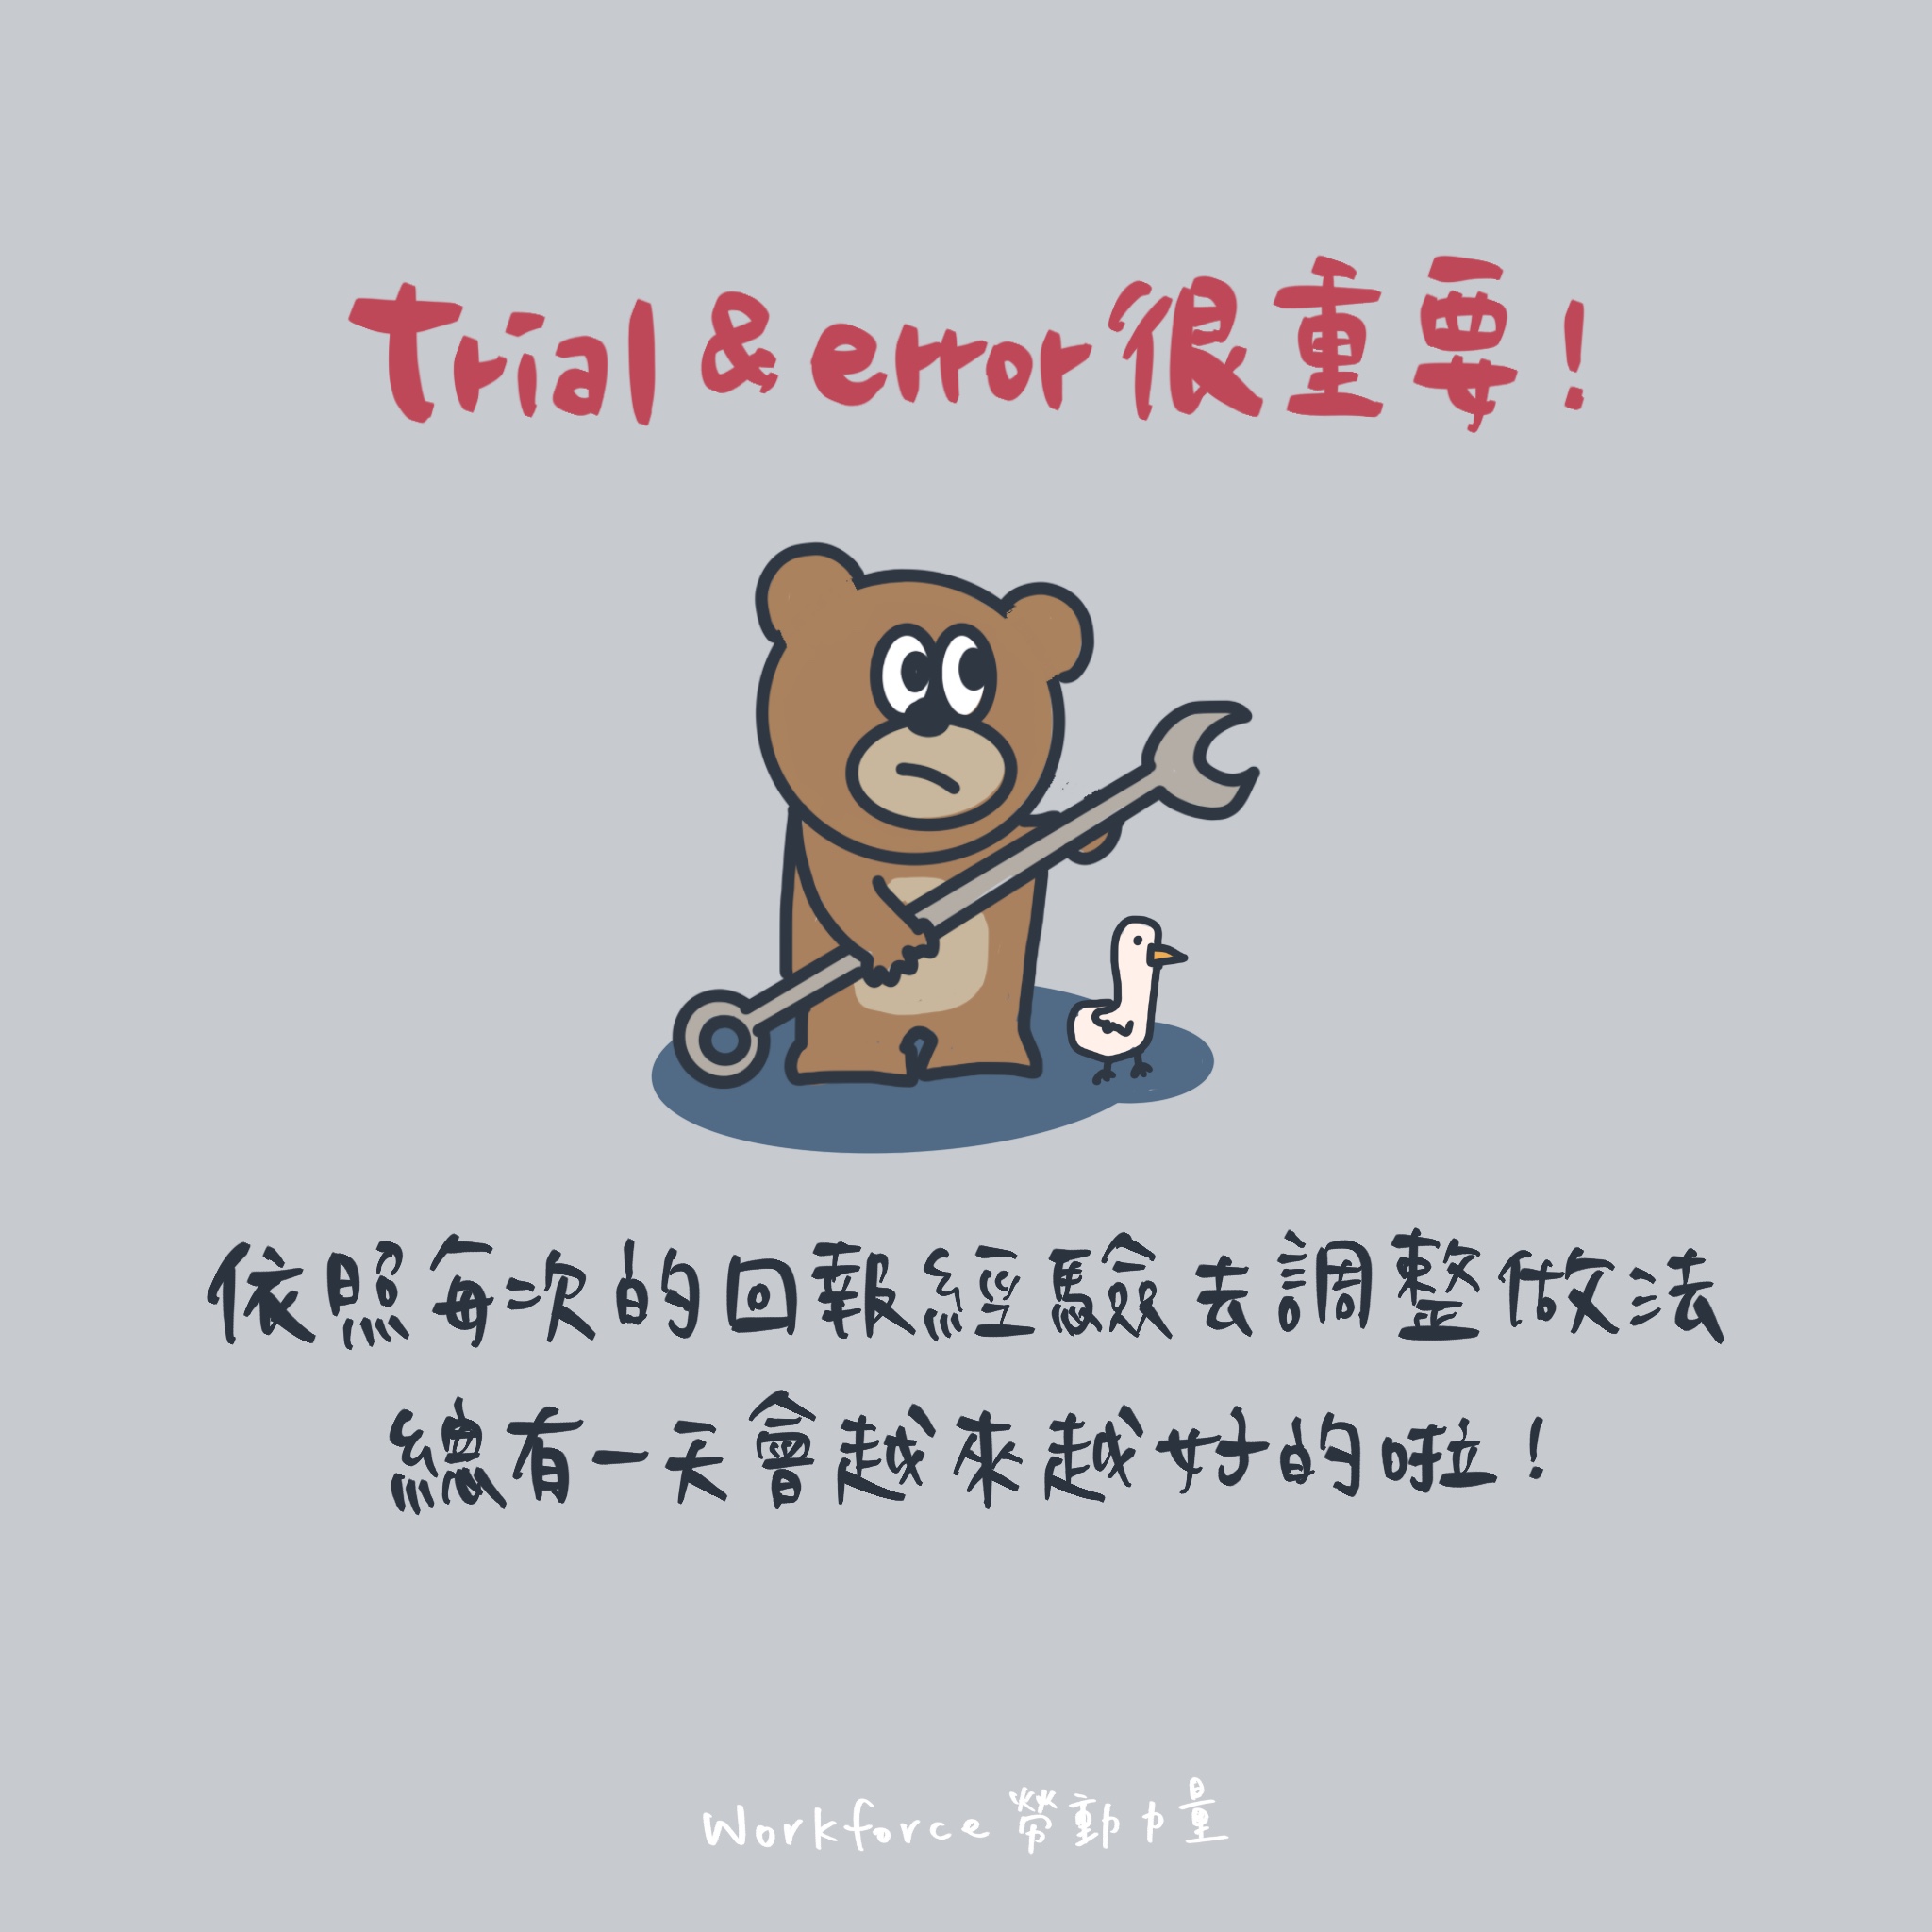 trial & error很重要！